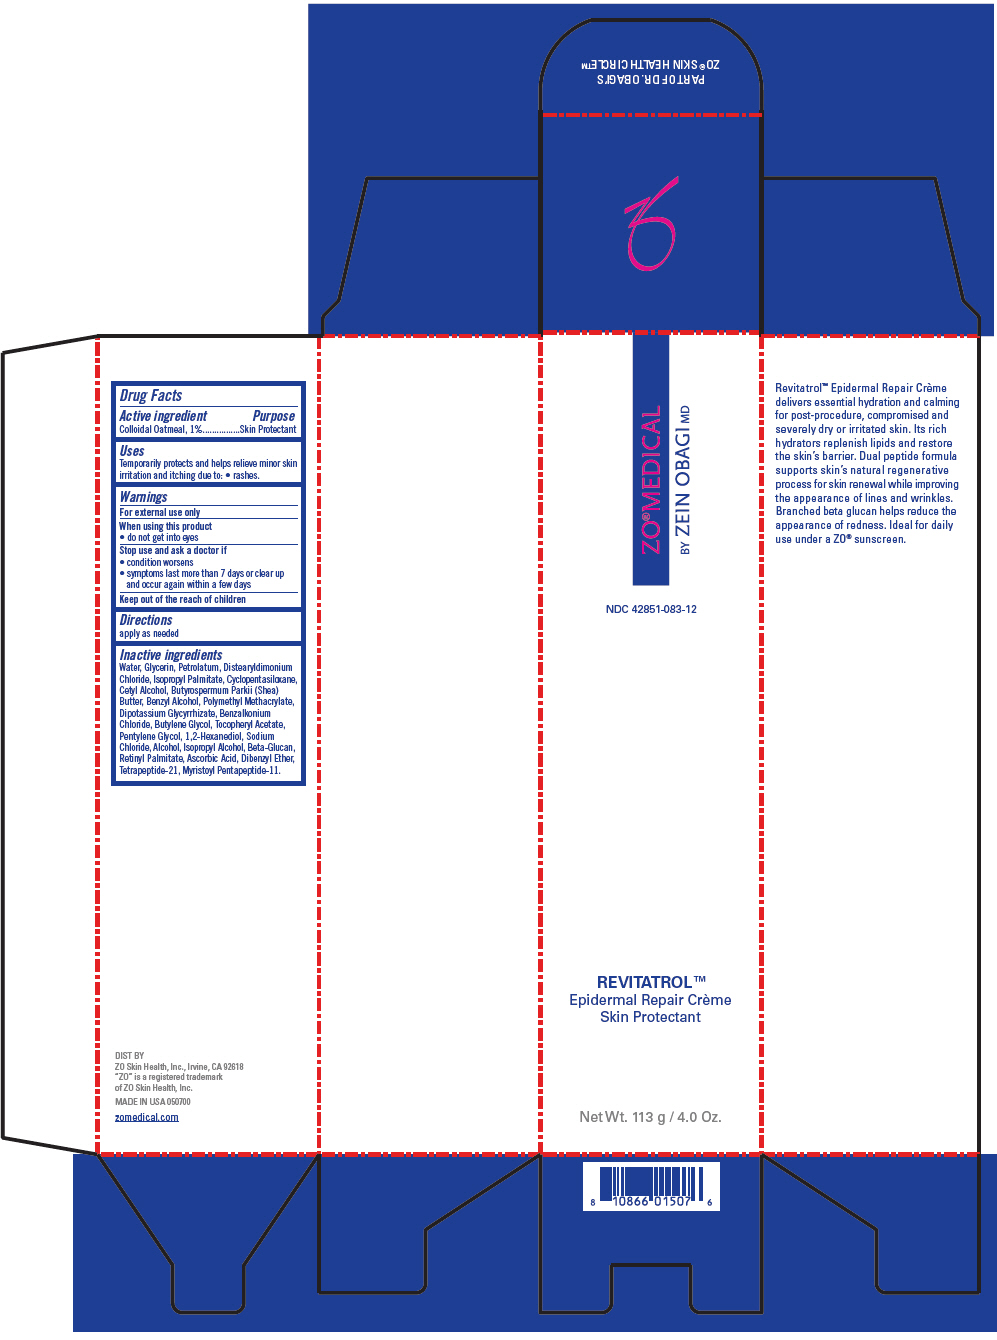 PRINCIPAL DISPLAY PANEL - 113 g Tube Carton